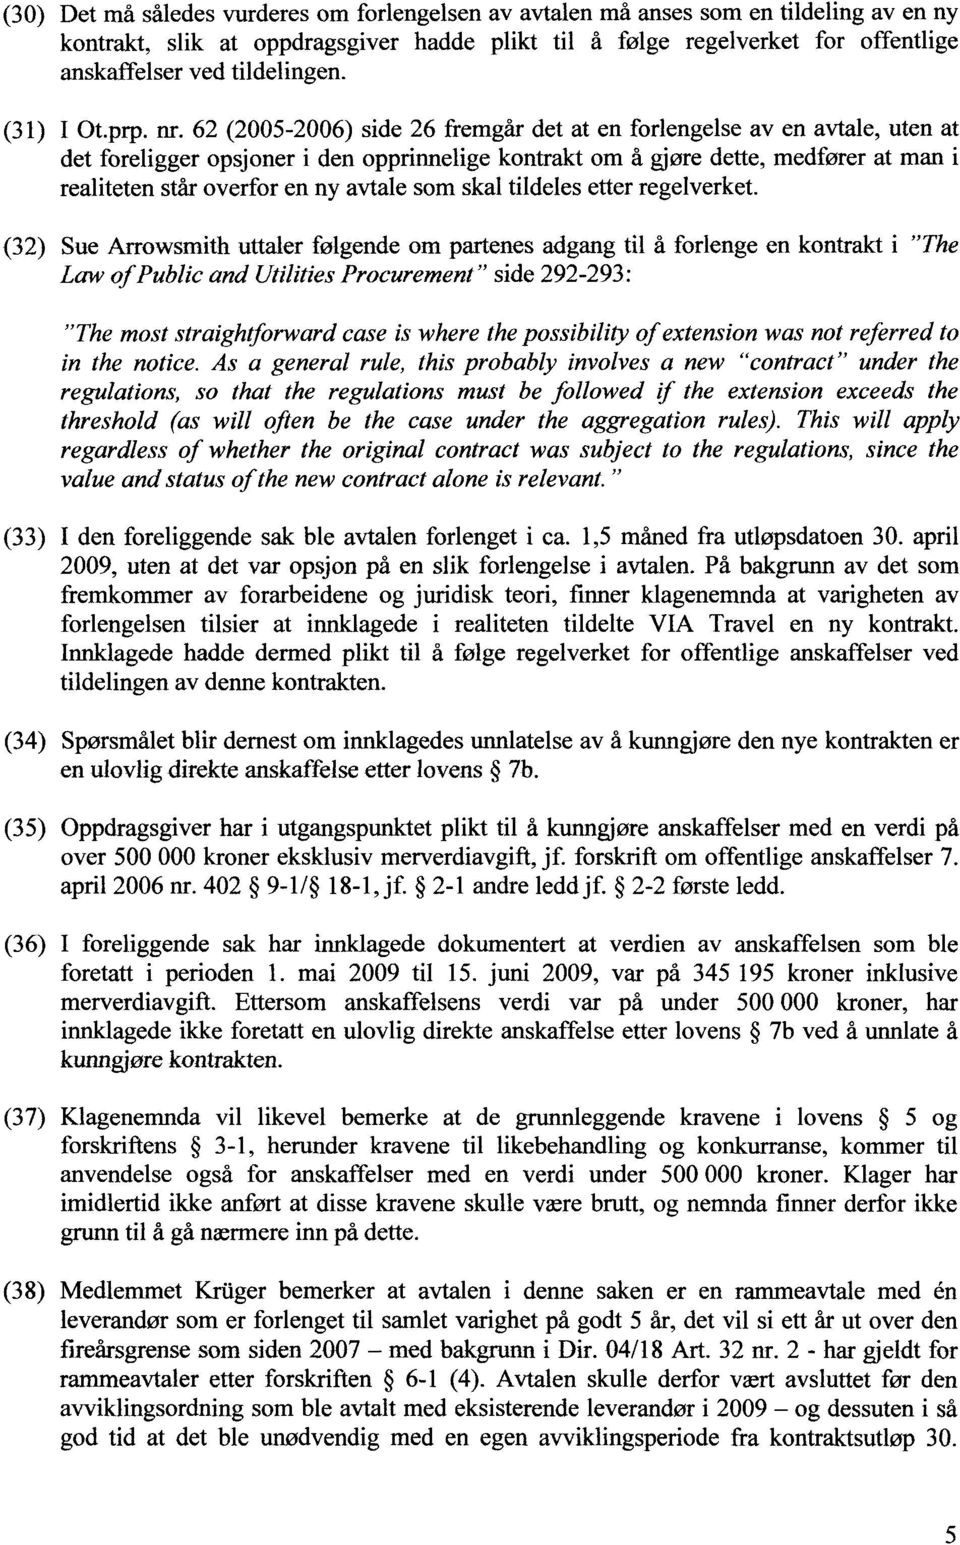 62 (2005-2006) side 26 fremgår det at en forlengelse av en avtale, uten at det foreligger opsjoner i den opprinnelige kontrakt om å gjøre dette, medfører at man i realiteten står overfor en ny avtale